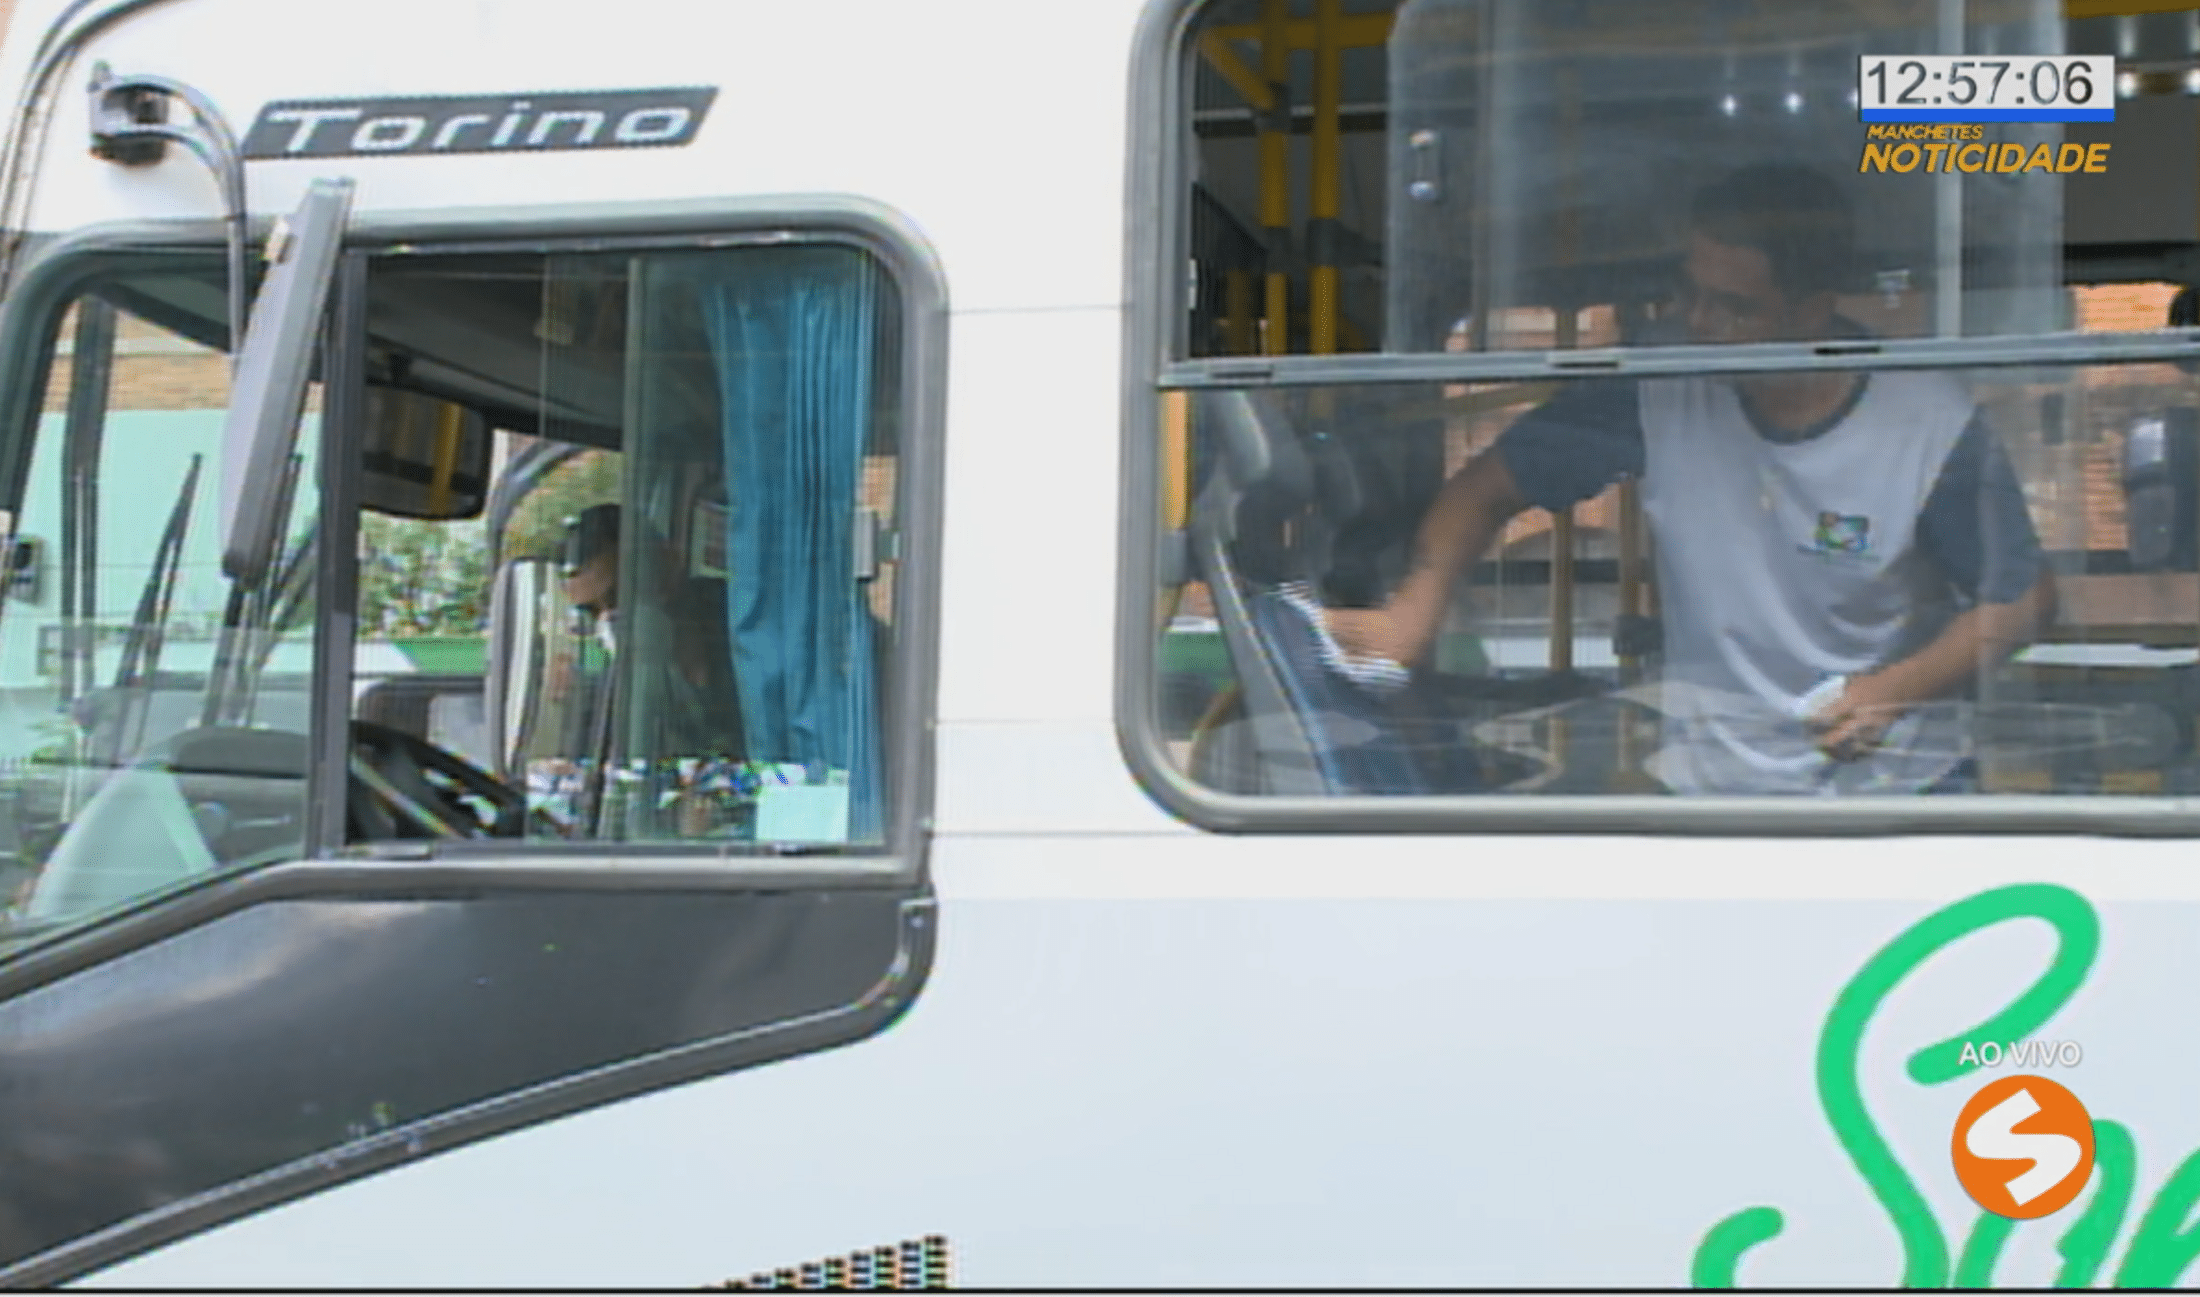 Transporte municipal de Sorocaba passará a atender em horários reduzidos